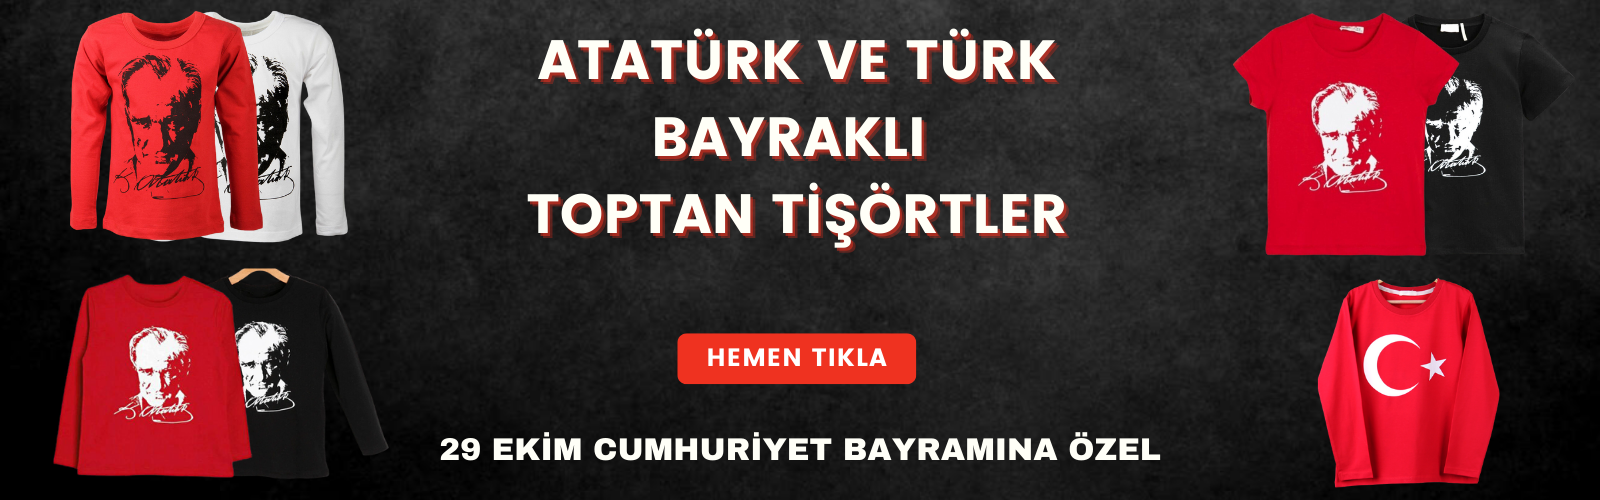 Atatürk Baskılı Tişört Toptan.png (669 KB)